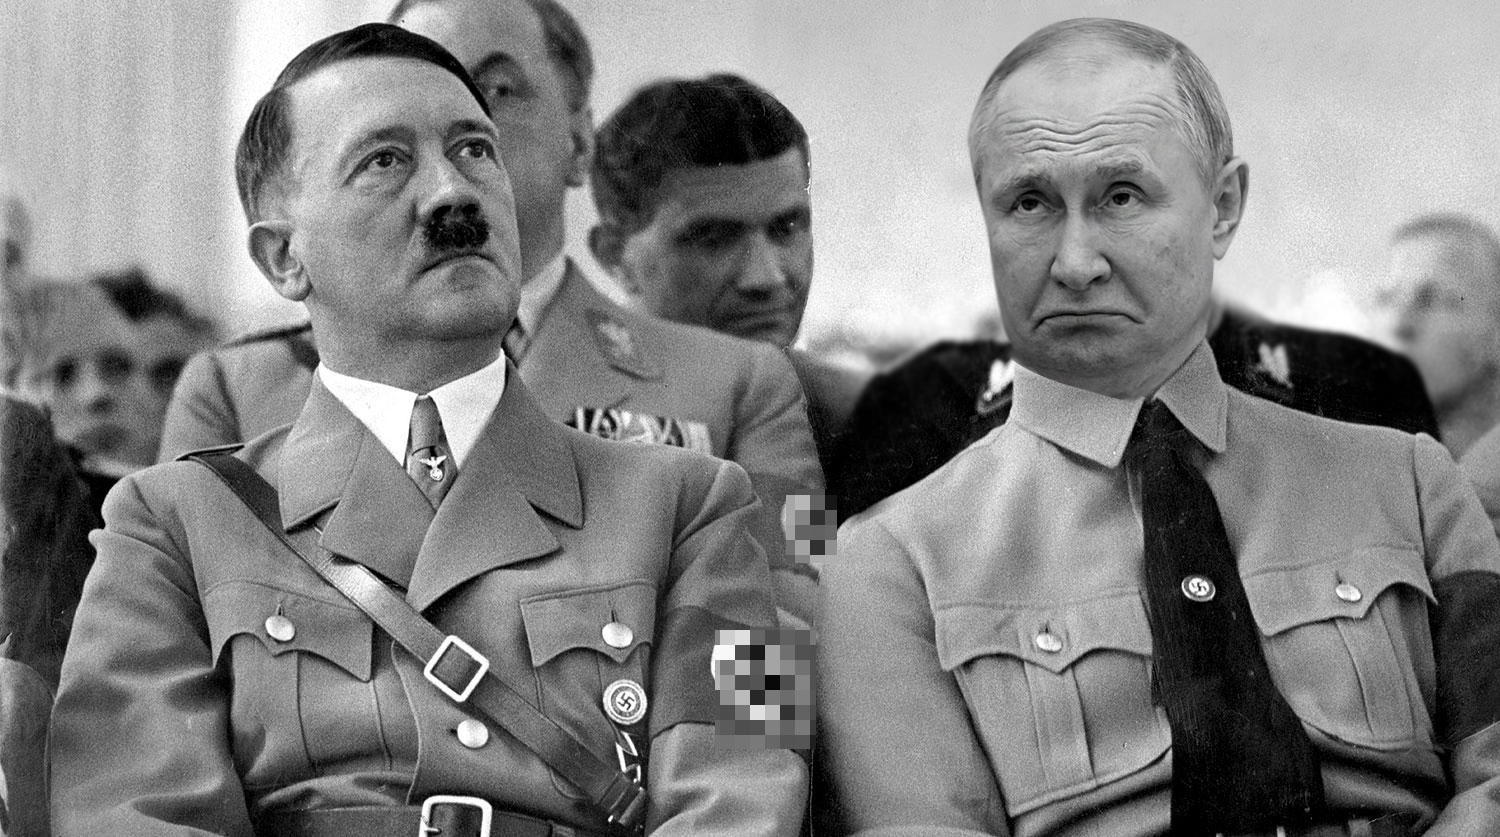 "Вранье по всем параметрам": историк рассказал, как Путин перенял опыт нацистской Германии